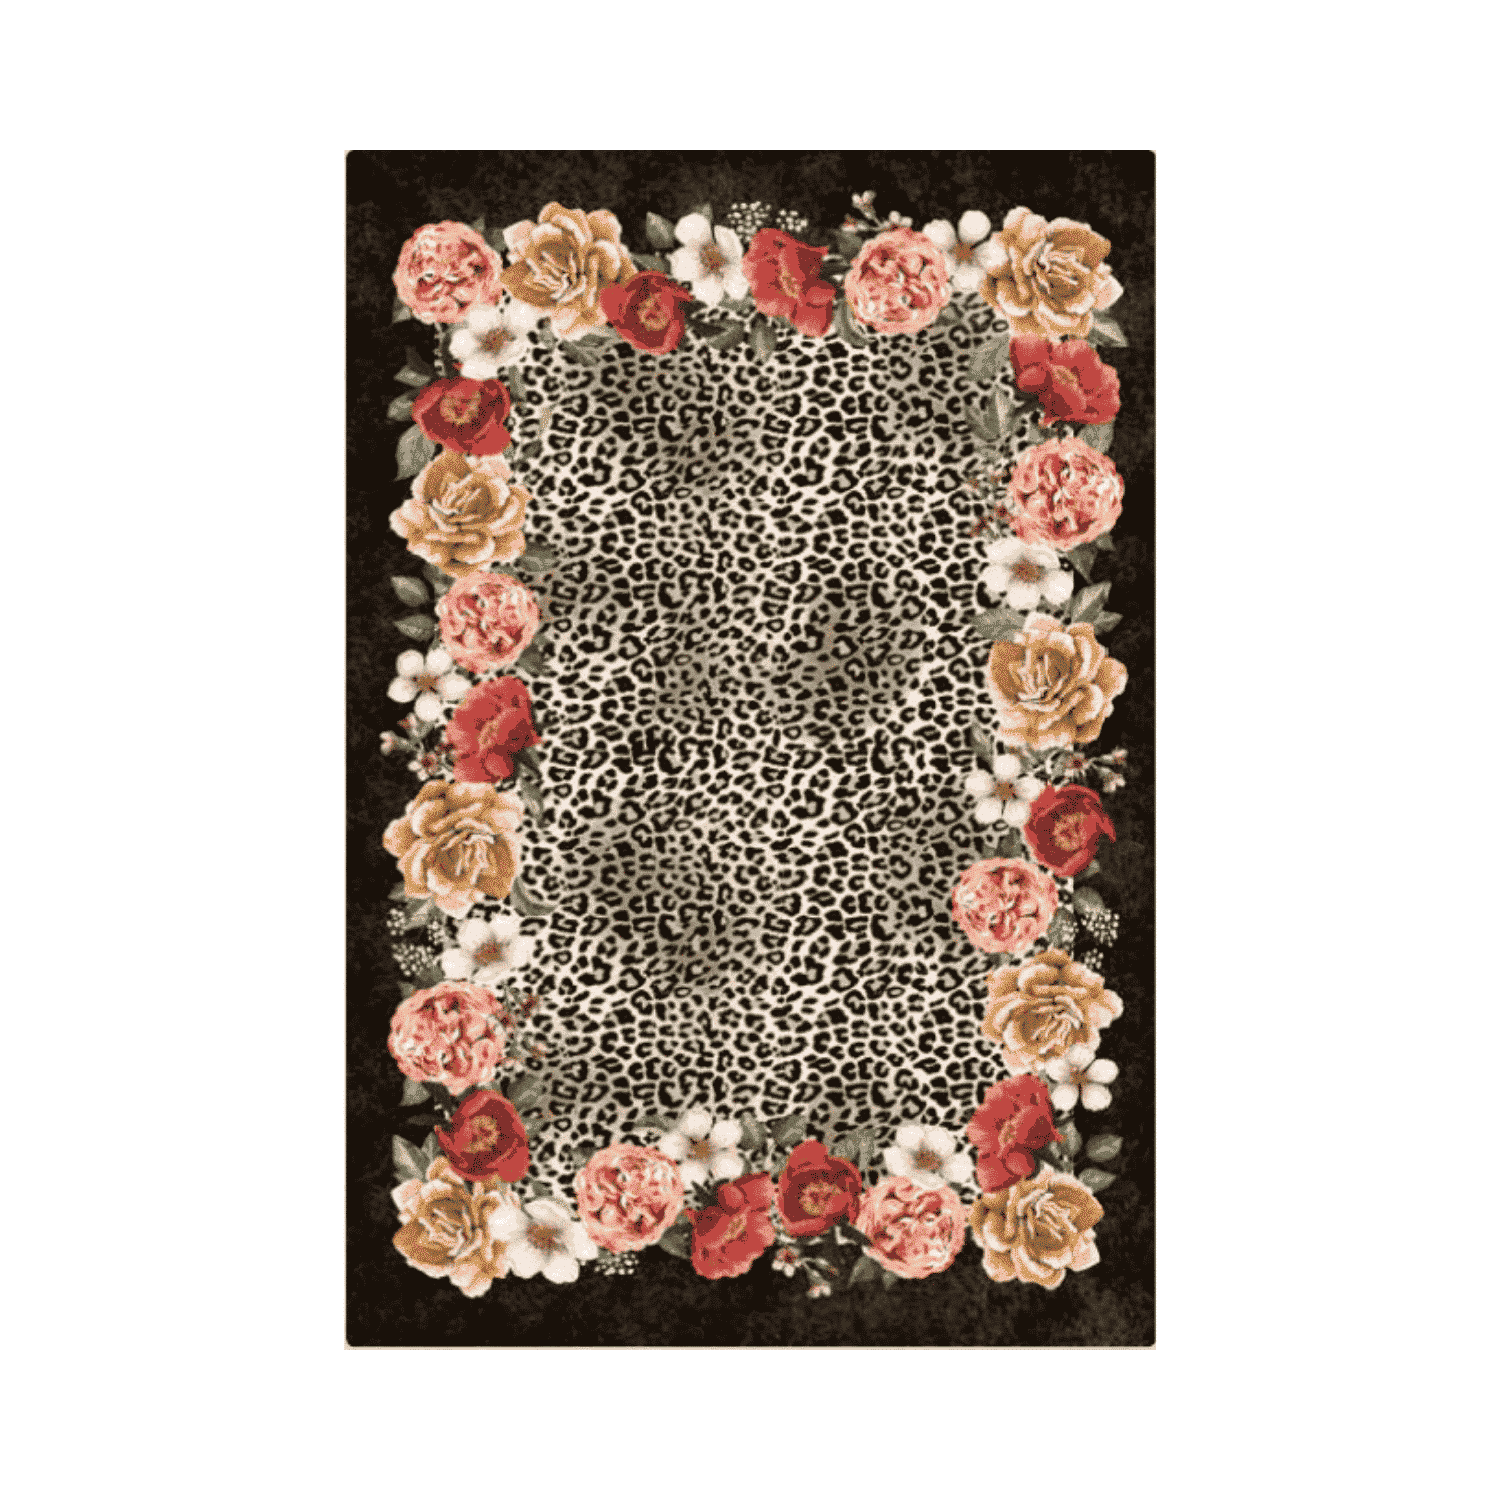 frida-tappeto-arredo-emozioni-artista-scuro-fiorato-multicolor-leopardato-front